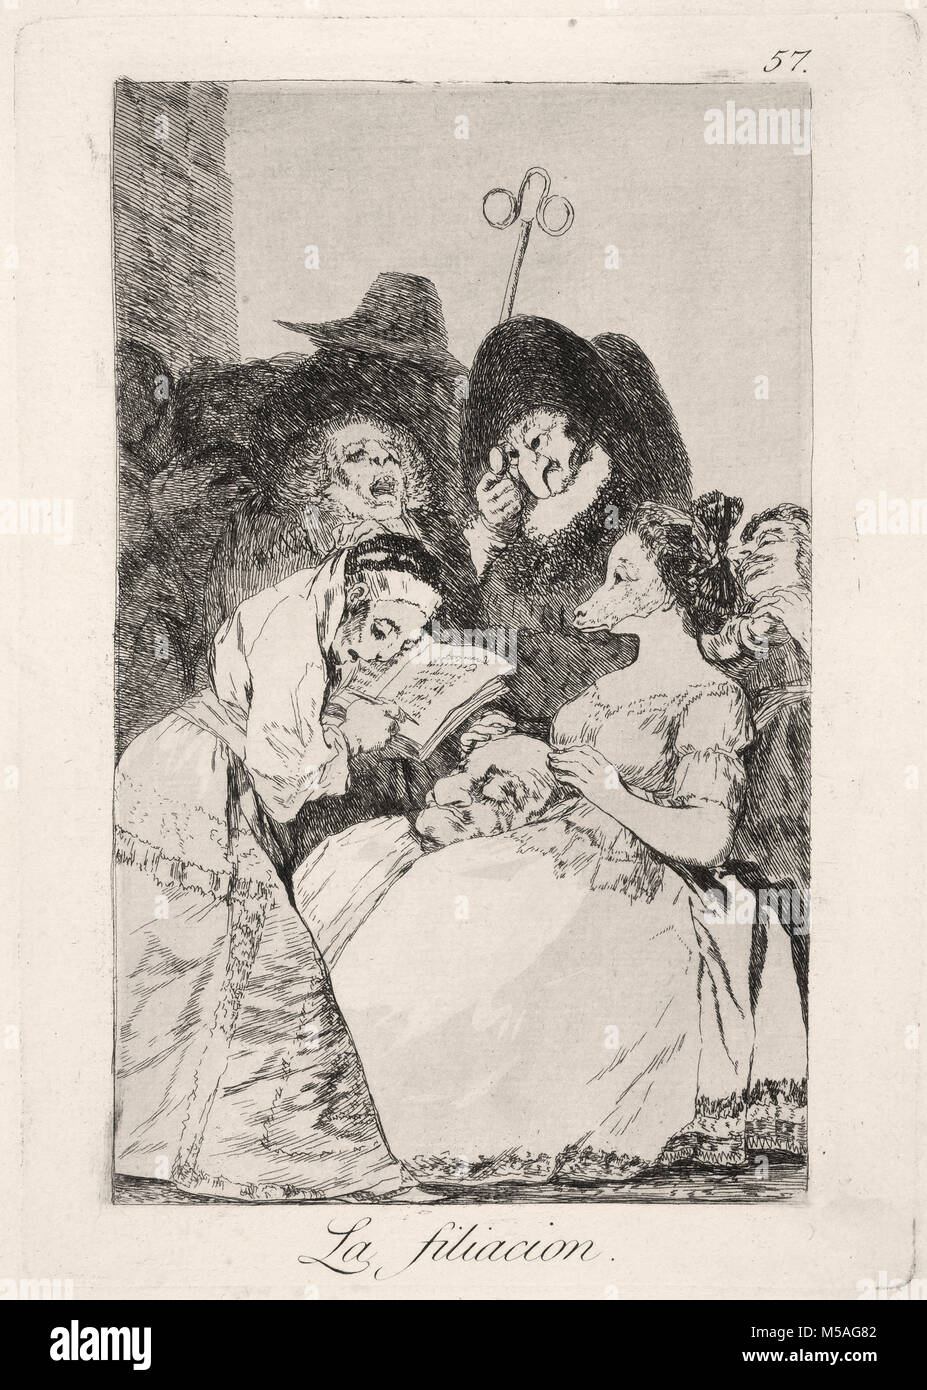 Francisco de Goya - Los Caprichos - Nr. 57 - La filiacion Stockfoto